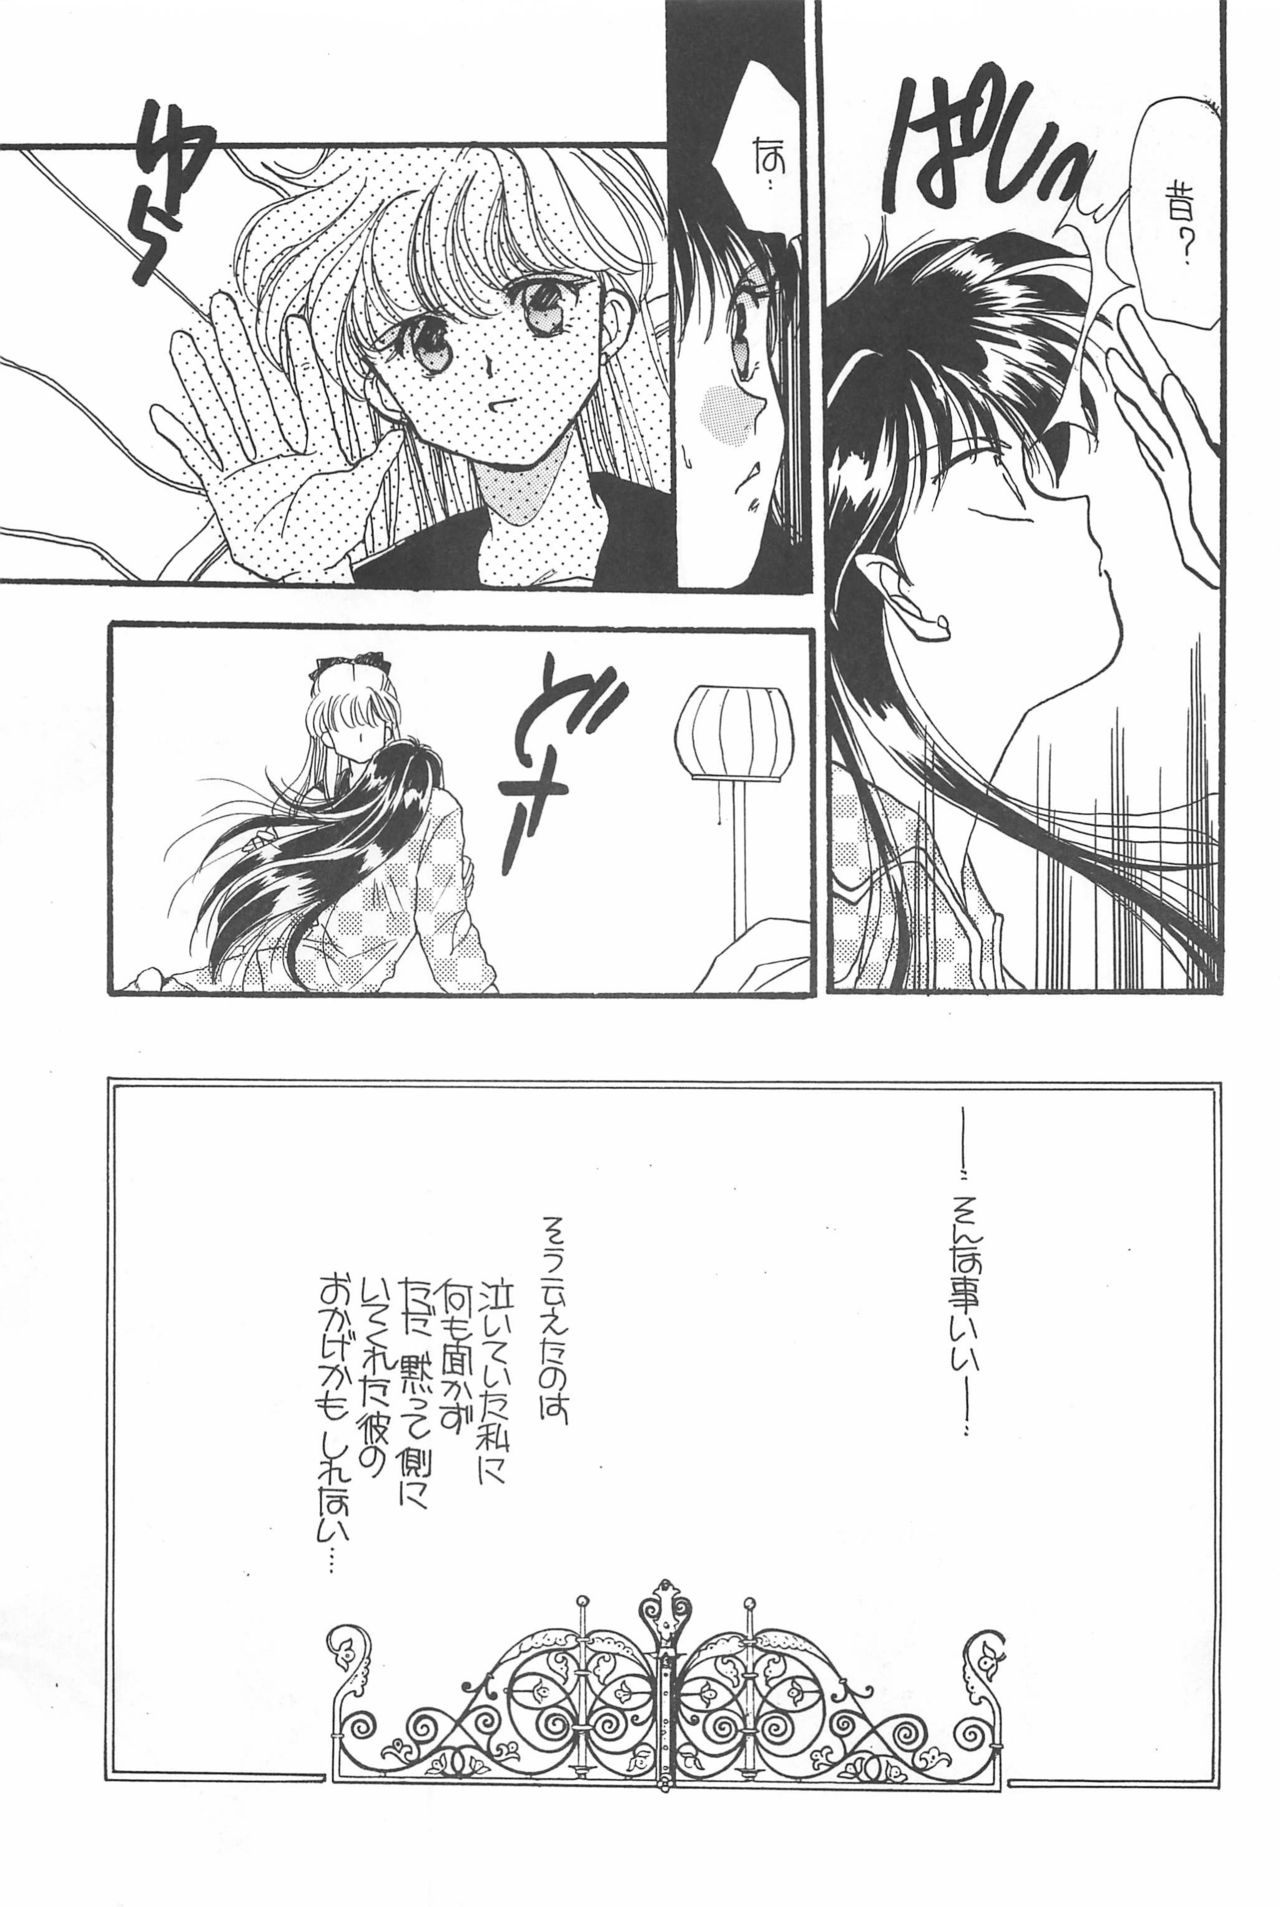 [Hello World (Muttri Moony)] Kaze no You ni Yume no You ni - Sailor Moon Collection (Sailor Moon) 132